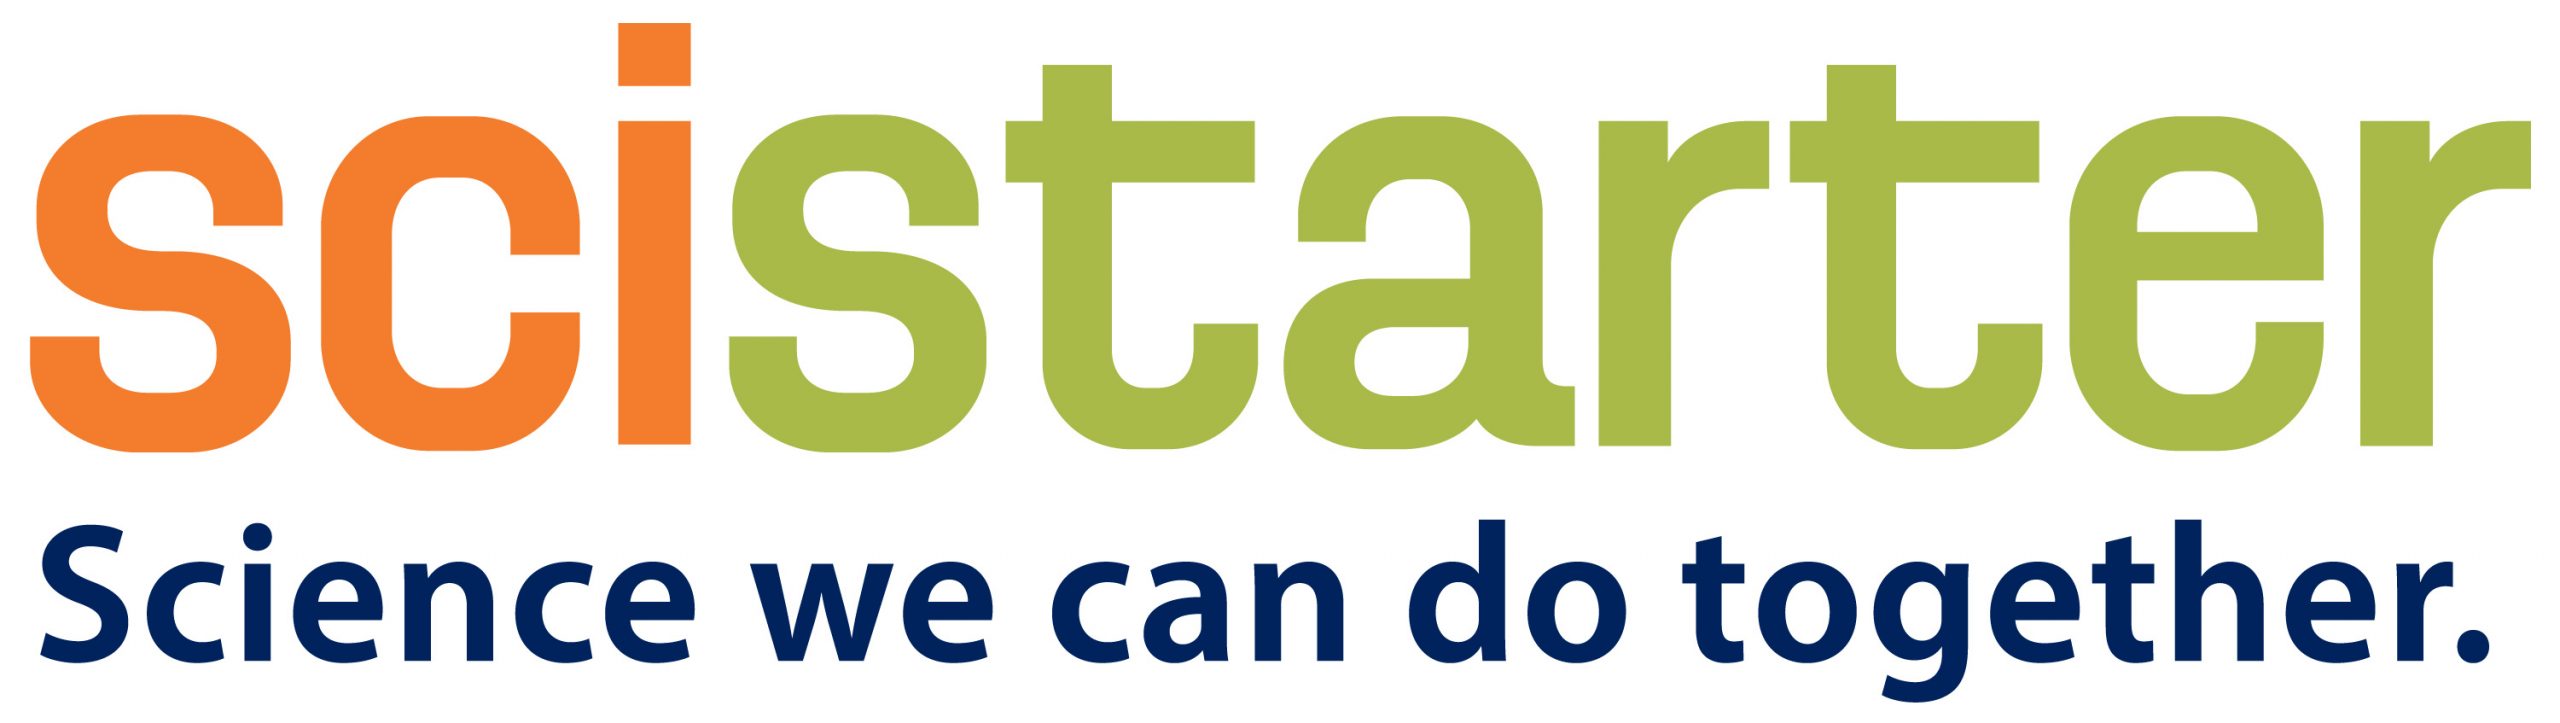 SciStarter: Science we can do together (logo)